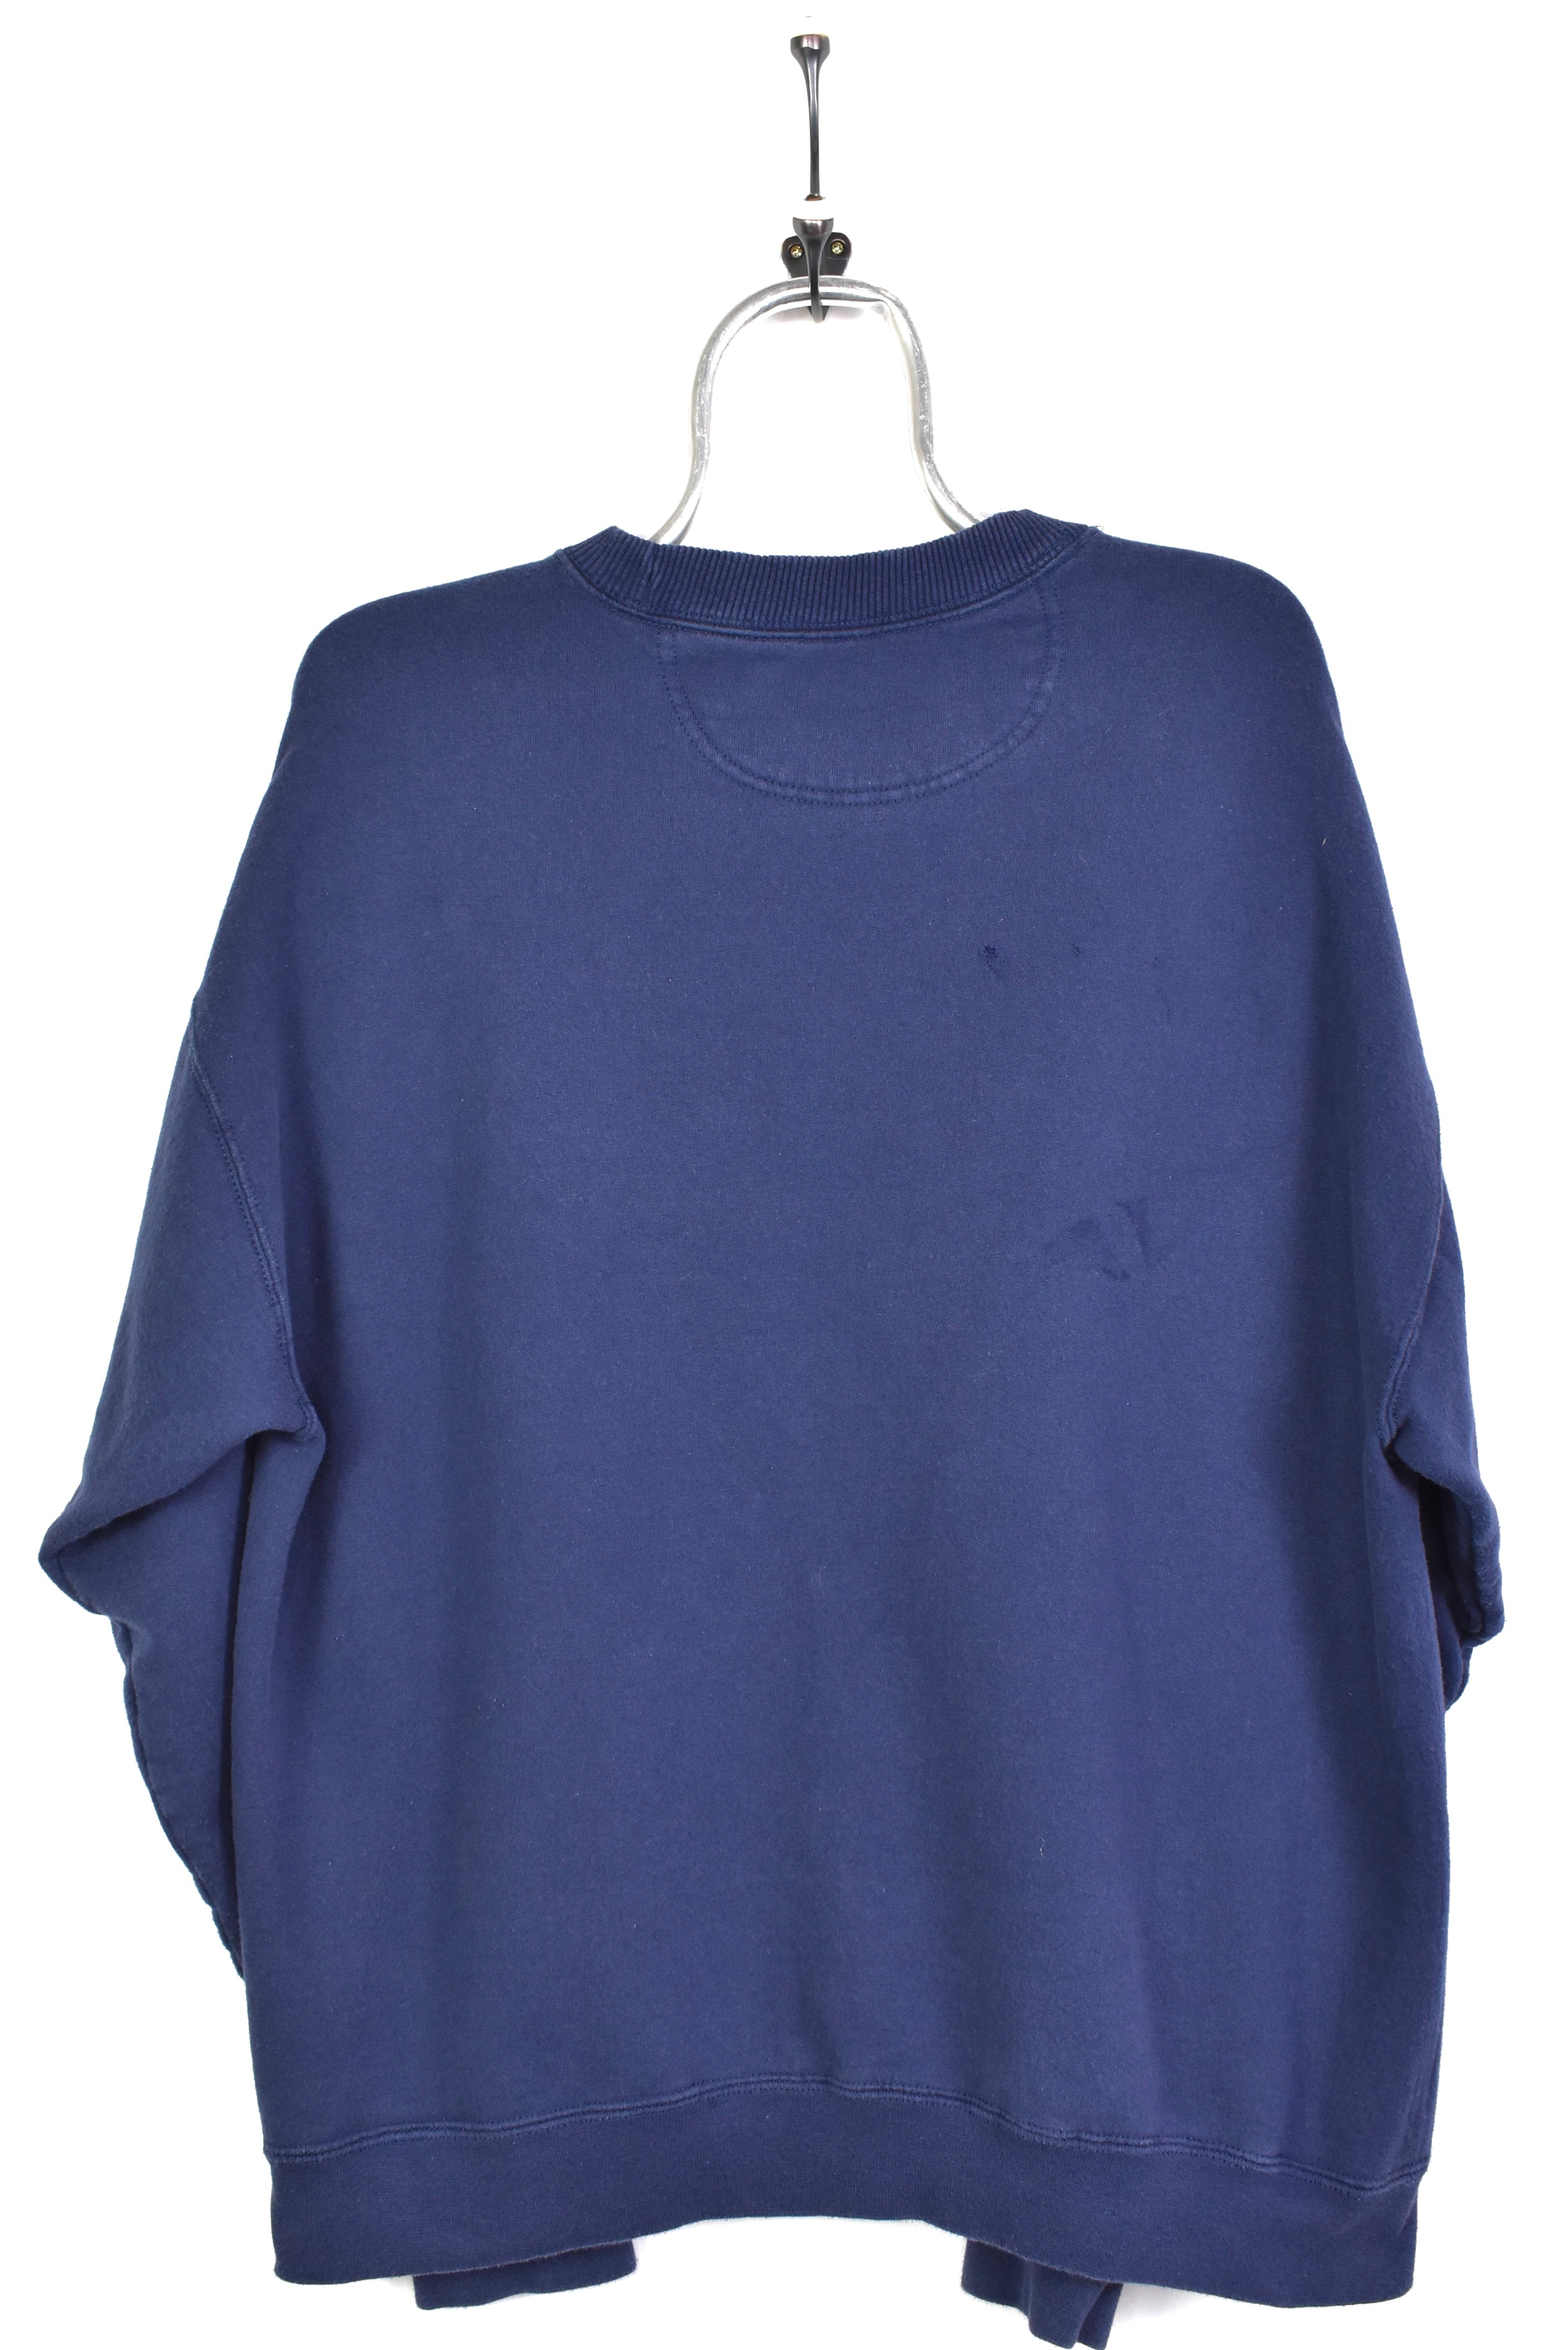 Vintage Starter embroidered navy sweatshirt | XL STARTER